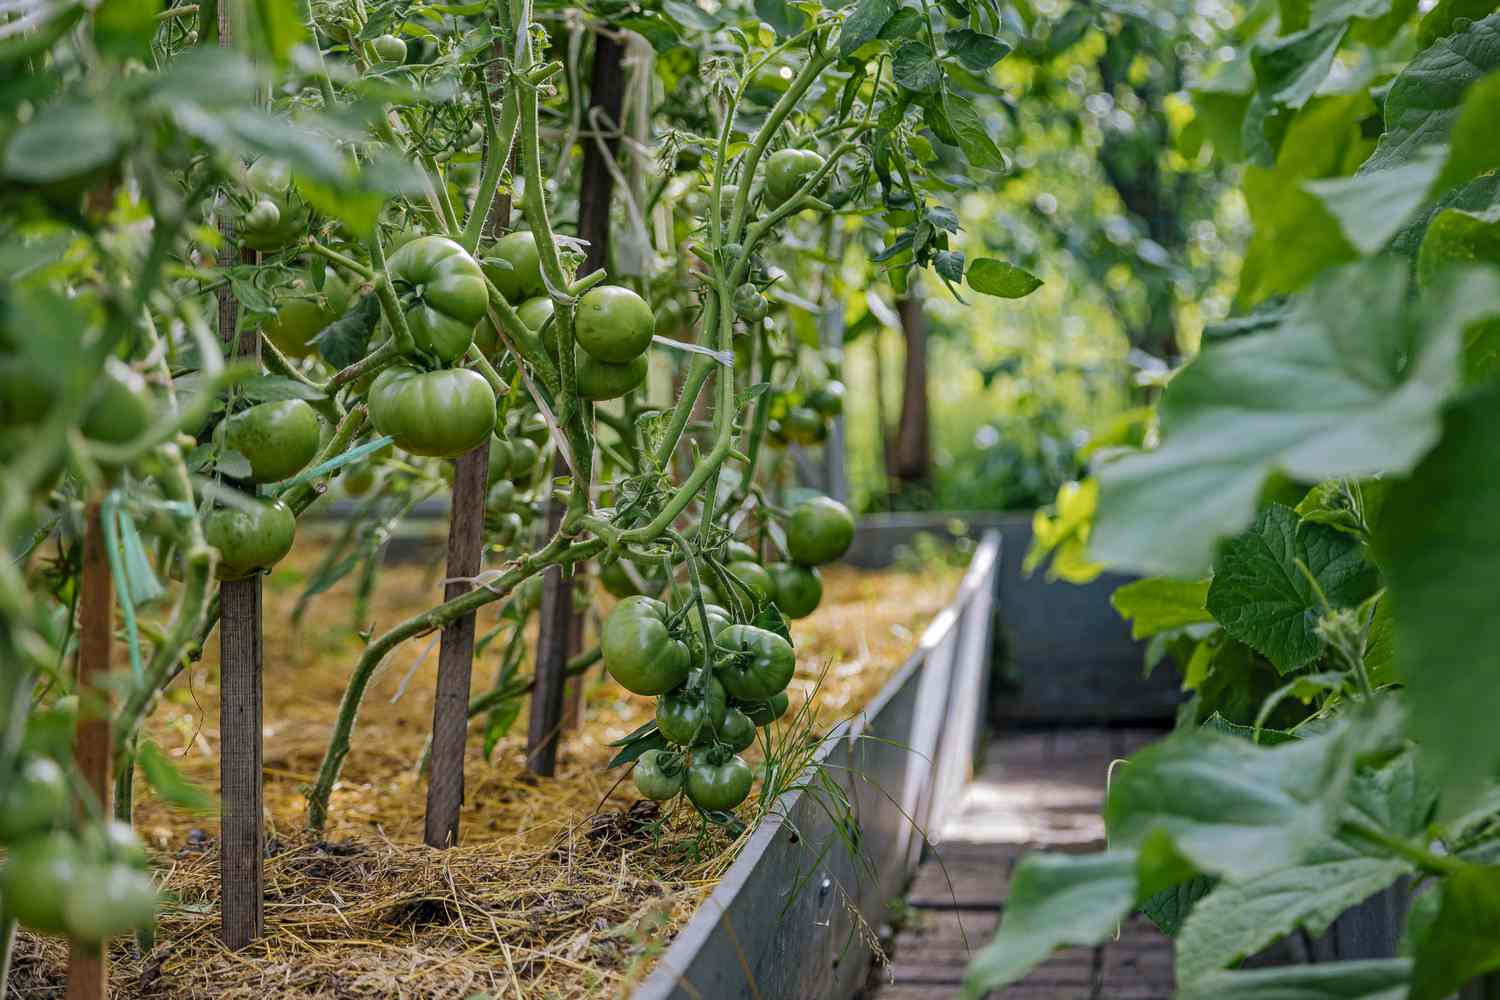 Nach Tomaten sollten in diesem Beet mindestens ein Jahr lang keine Nachtschattengewächse angebaut werden